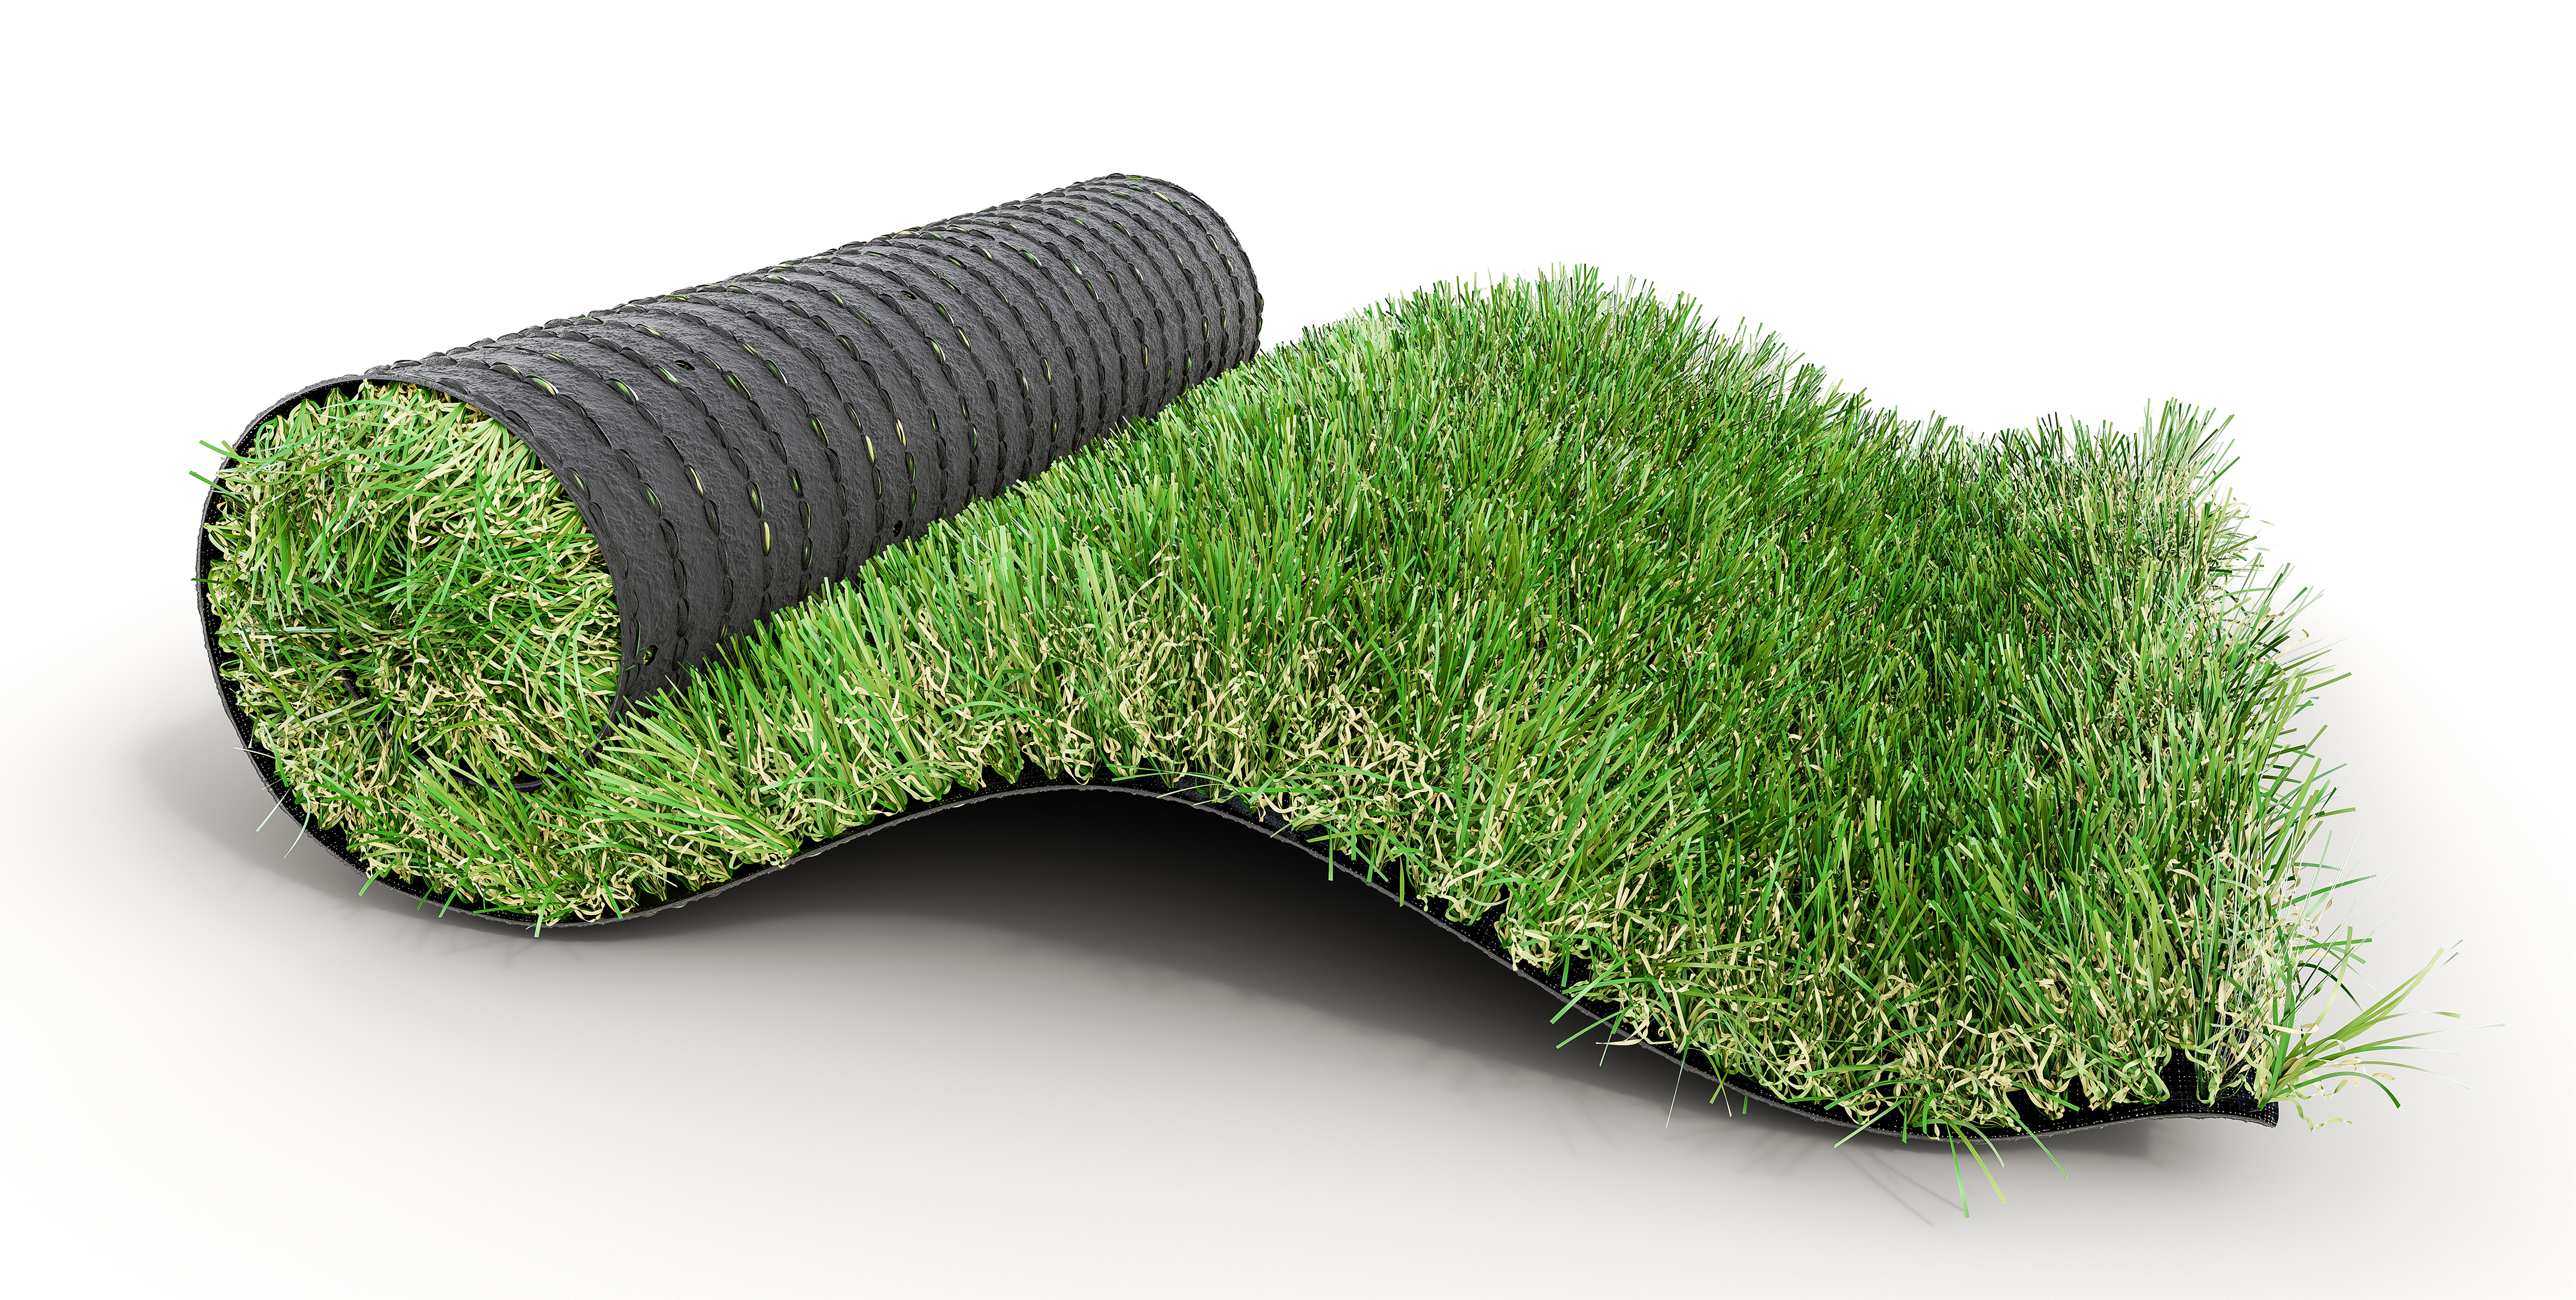 Tapis de gazon artificiel – Hauteur de l'herbe : 3,5 cm – Taille : 1,8 x 3  m – Couleur/taille parfaite pour toutes les utilisations et décorations